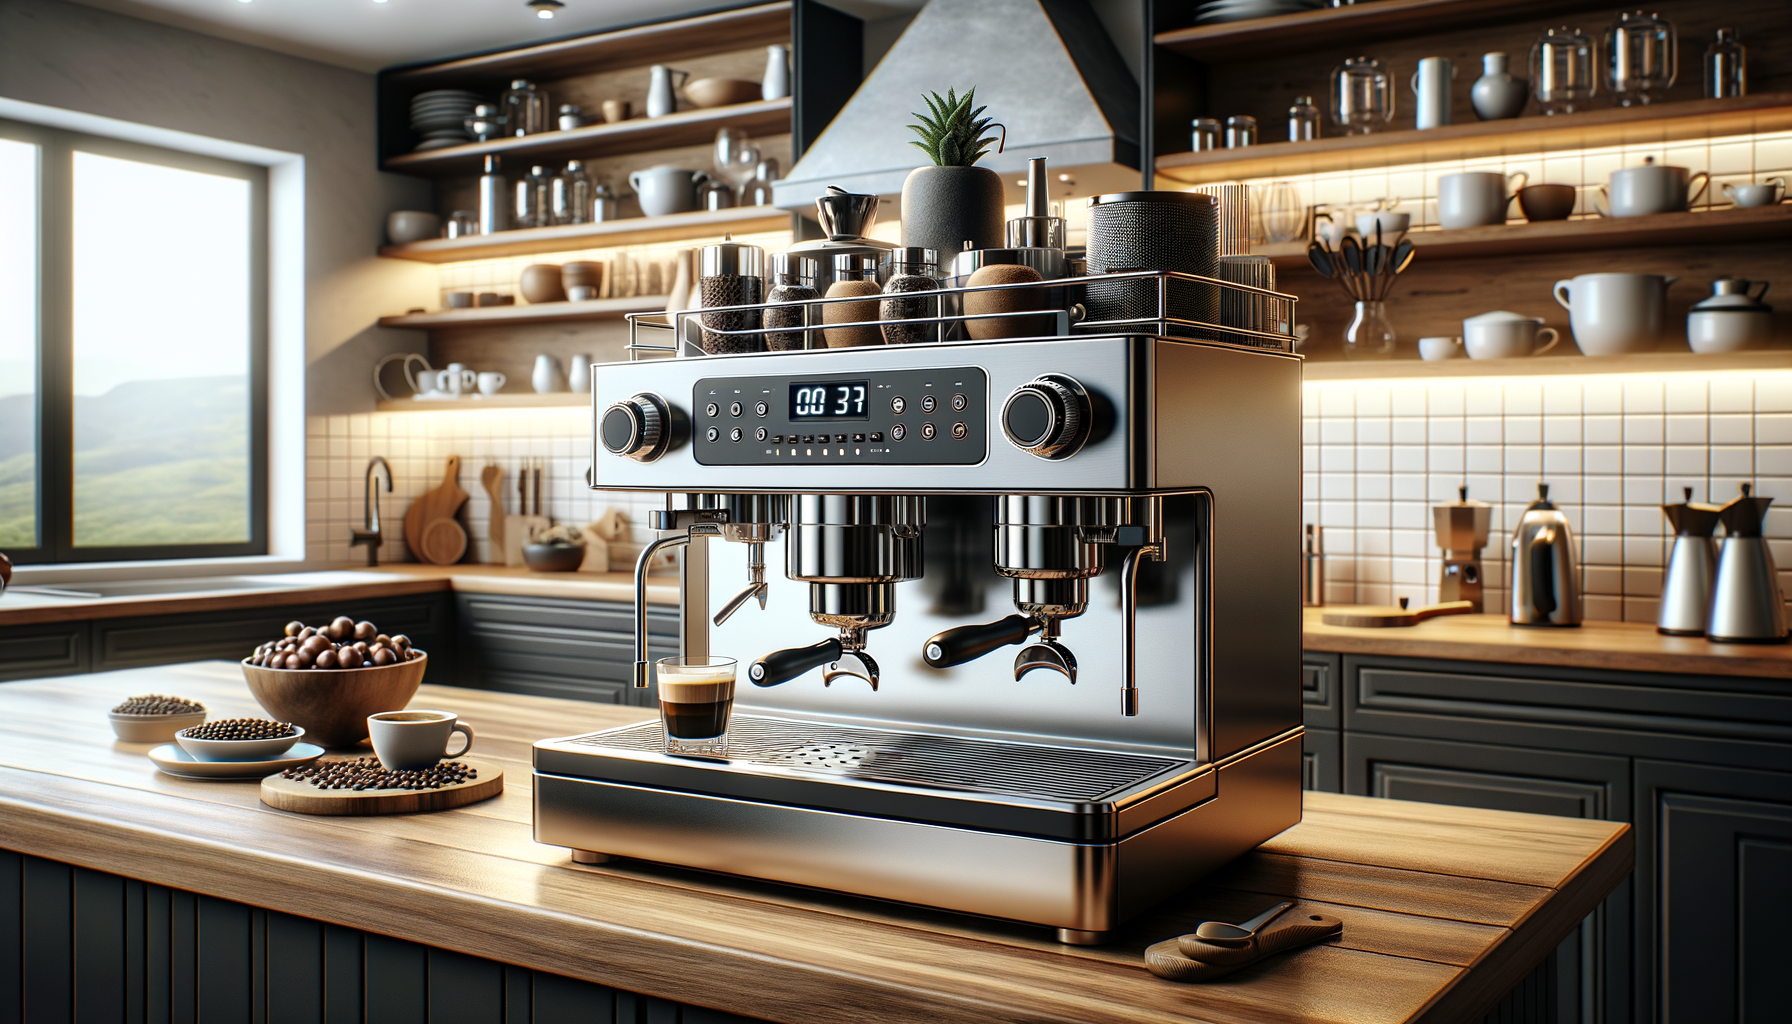 Визуализировать кофемашину Bosch, на фоне стильной кухни с акцентом на дизайн и функциональность устройства.